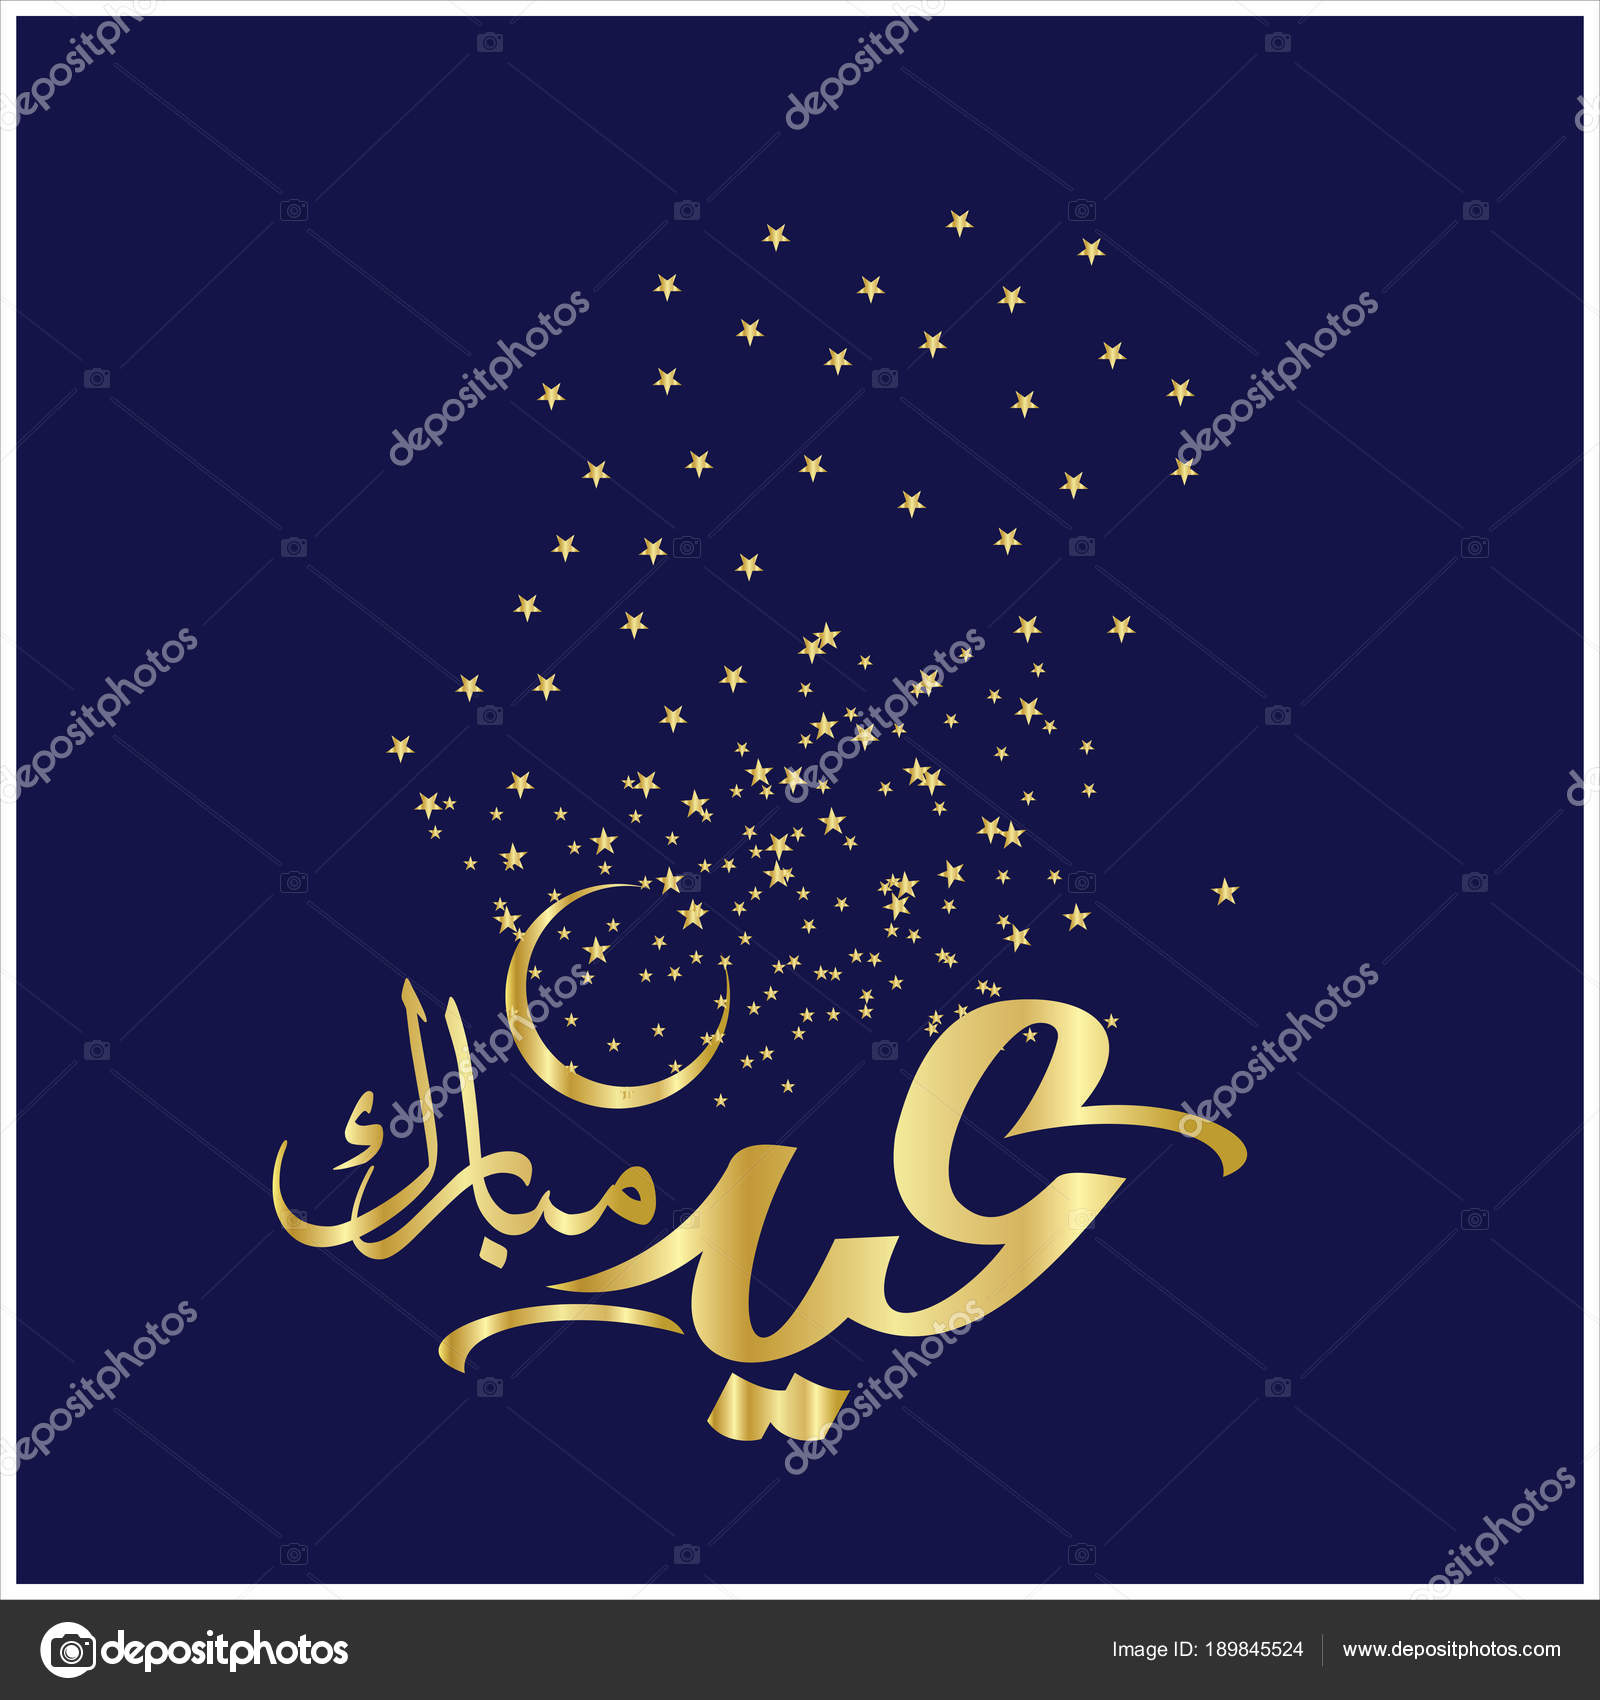 Cartes de voeux 2019 musulmanes gratuites – Salutations 